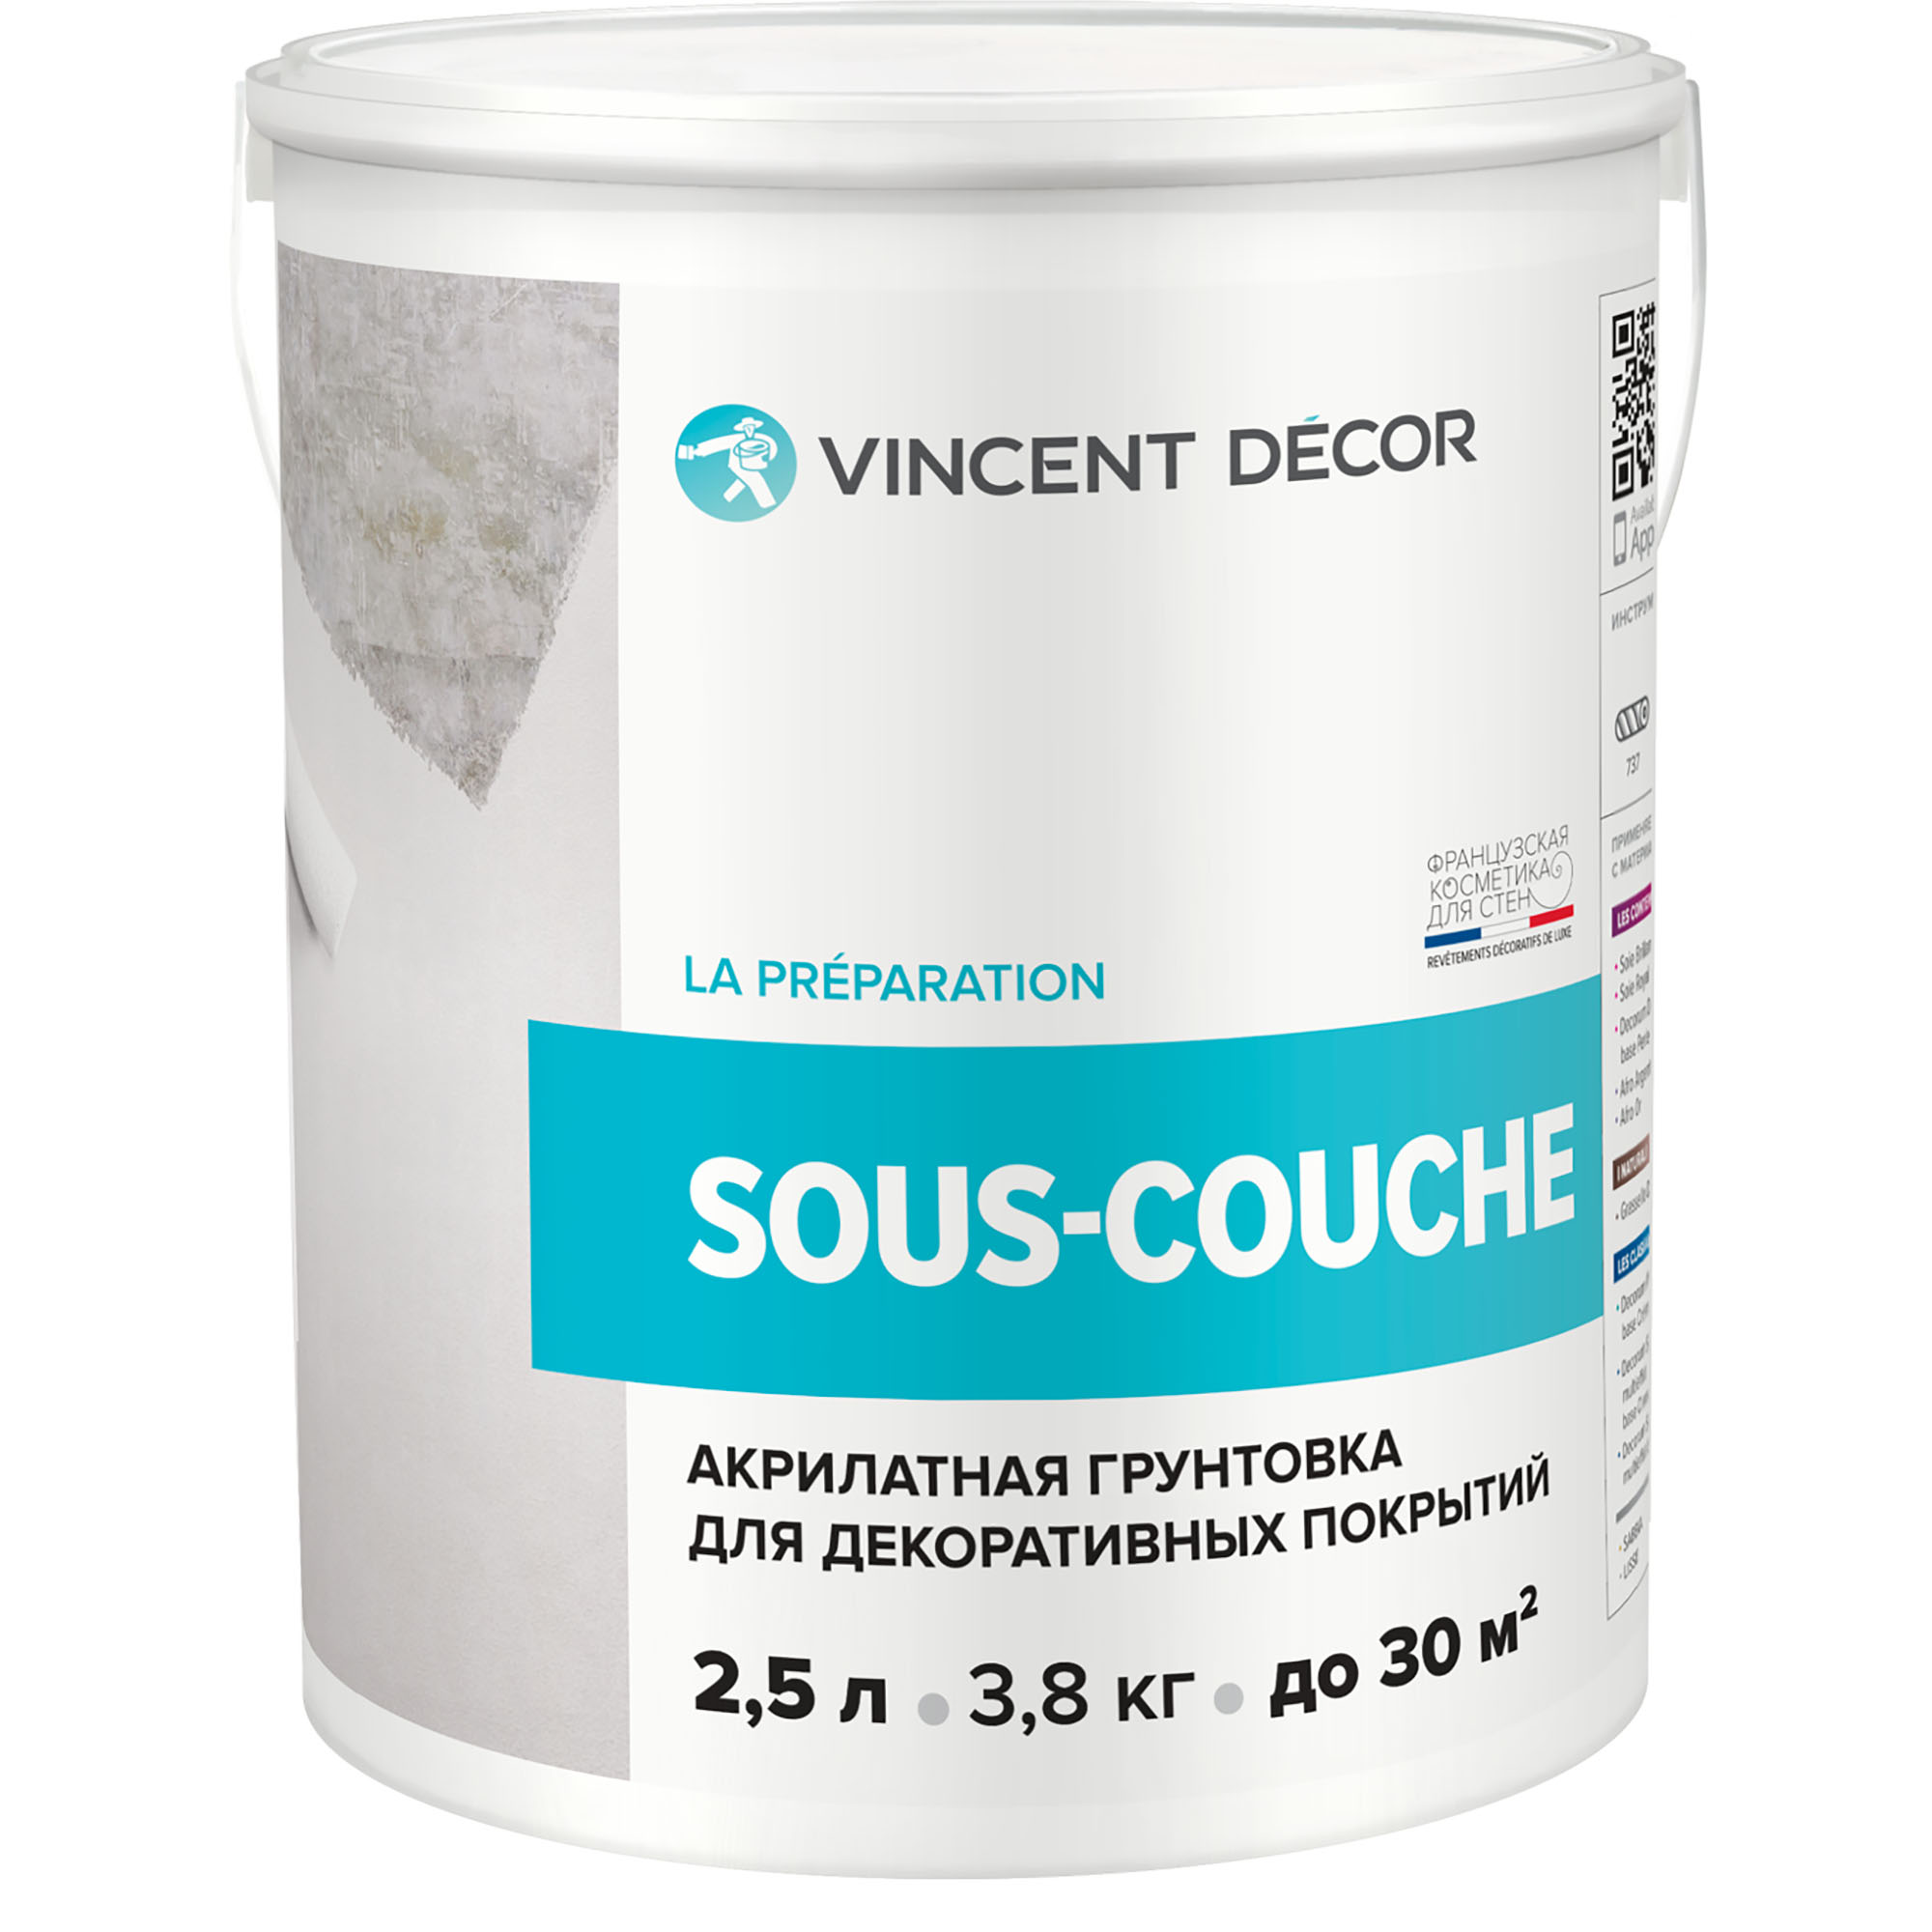 Грунтовка для декоративных покрытий Vincent Decor Sous-Couсhe 2,5 л